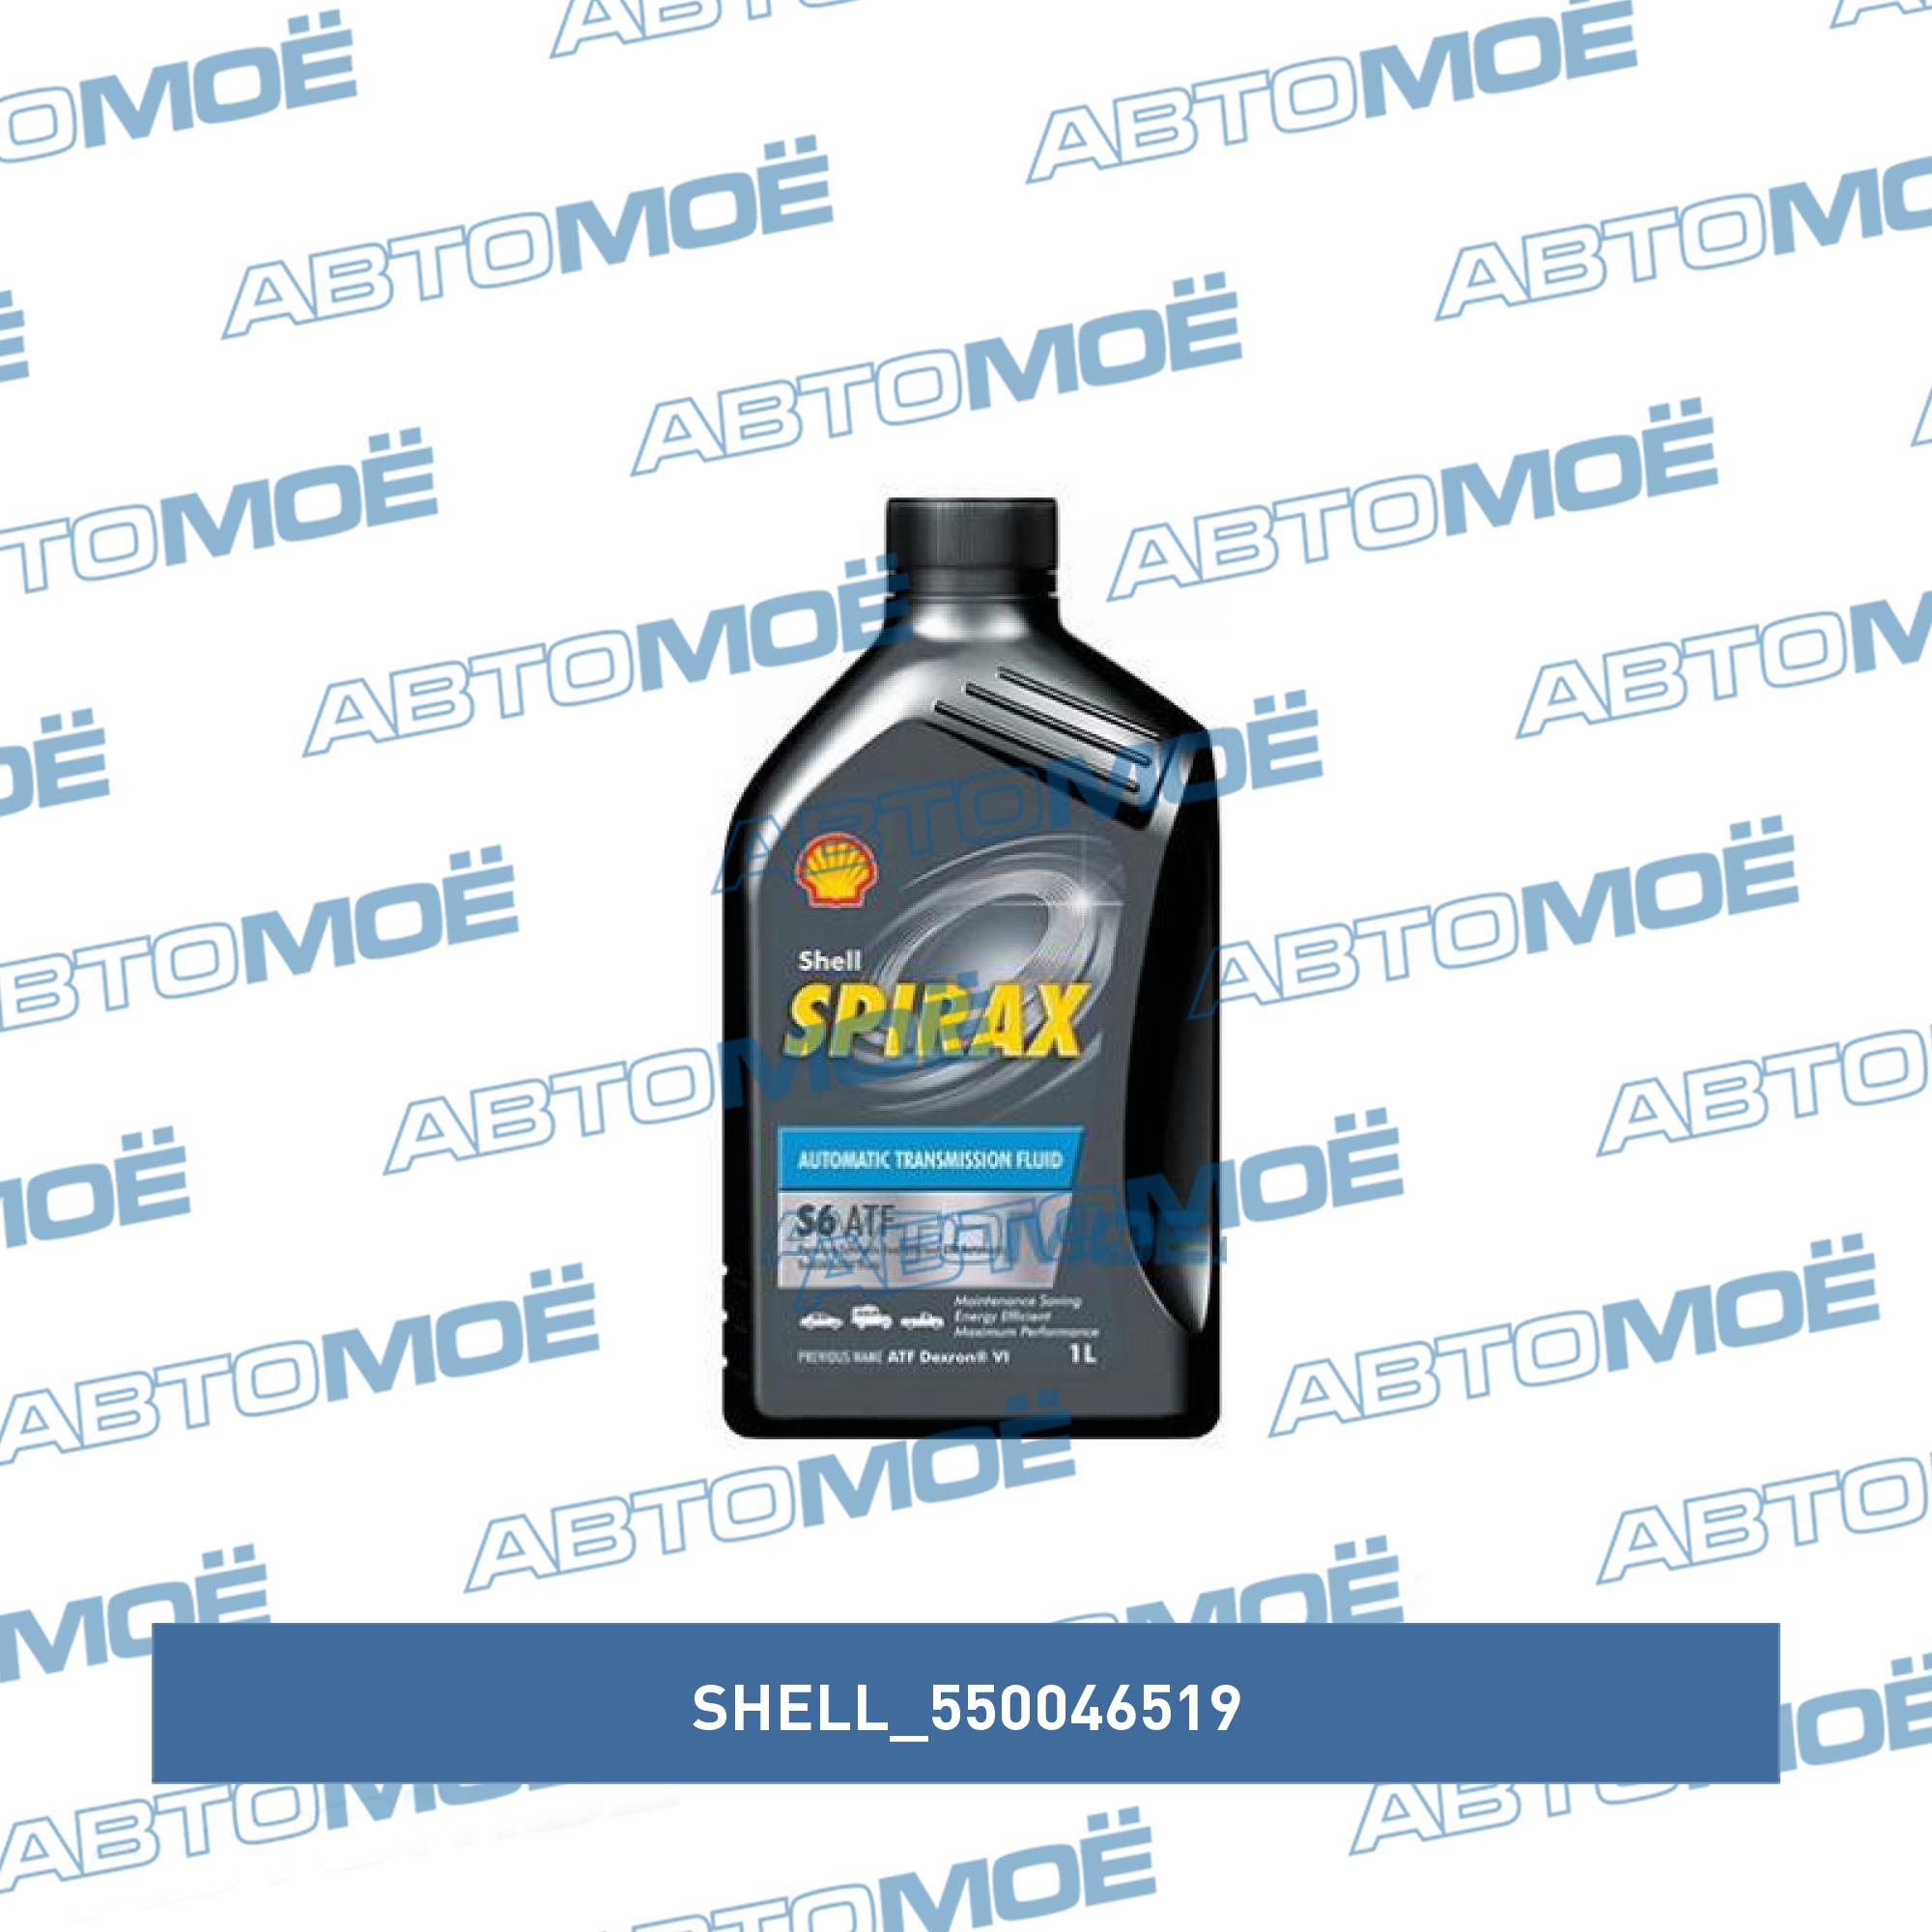 S6 atf x. Трансмиссионное масло Shell Spirax s6 ATF X. Shell Spirax s6 ATF X 550046519 масло трансмиссионное Shell Spirax s6 ATF X 1 Л 550046519. Spirax s6 ATF X цена. 550046519.